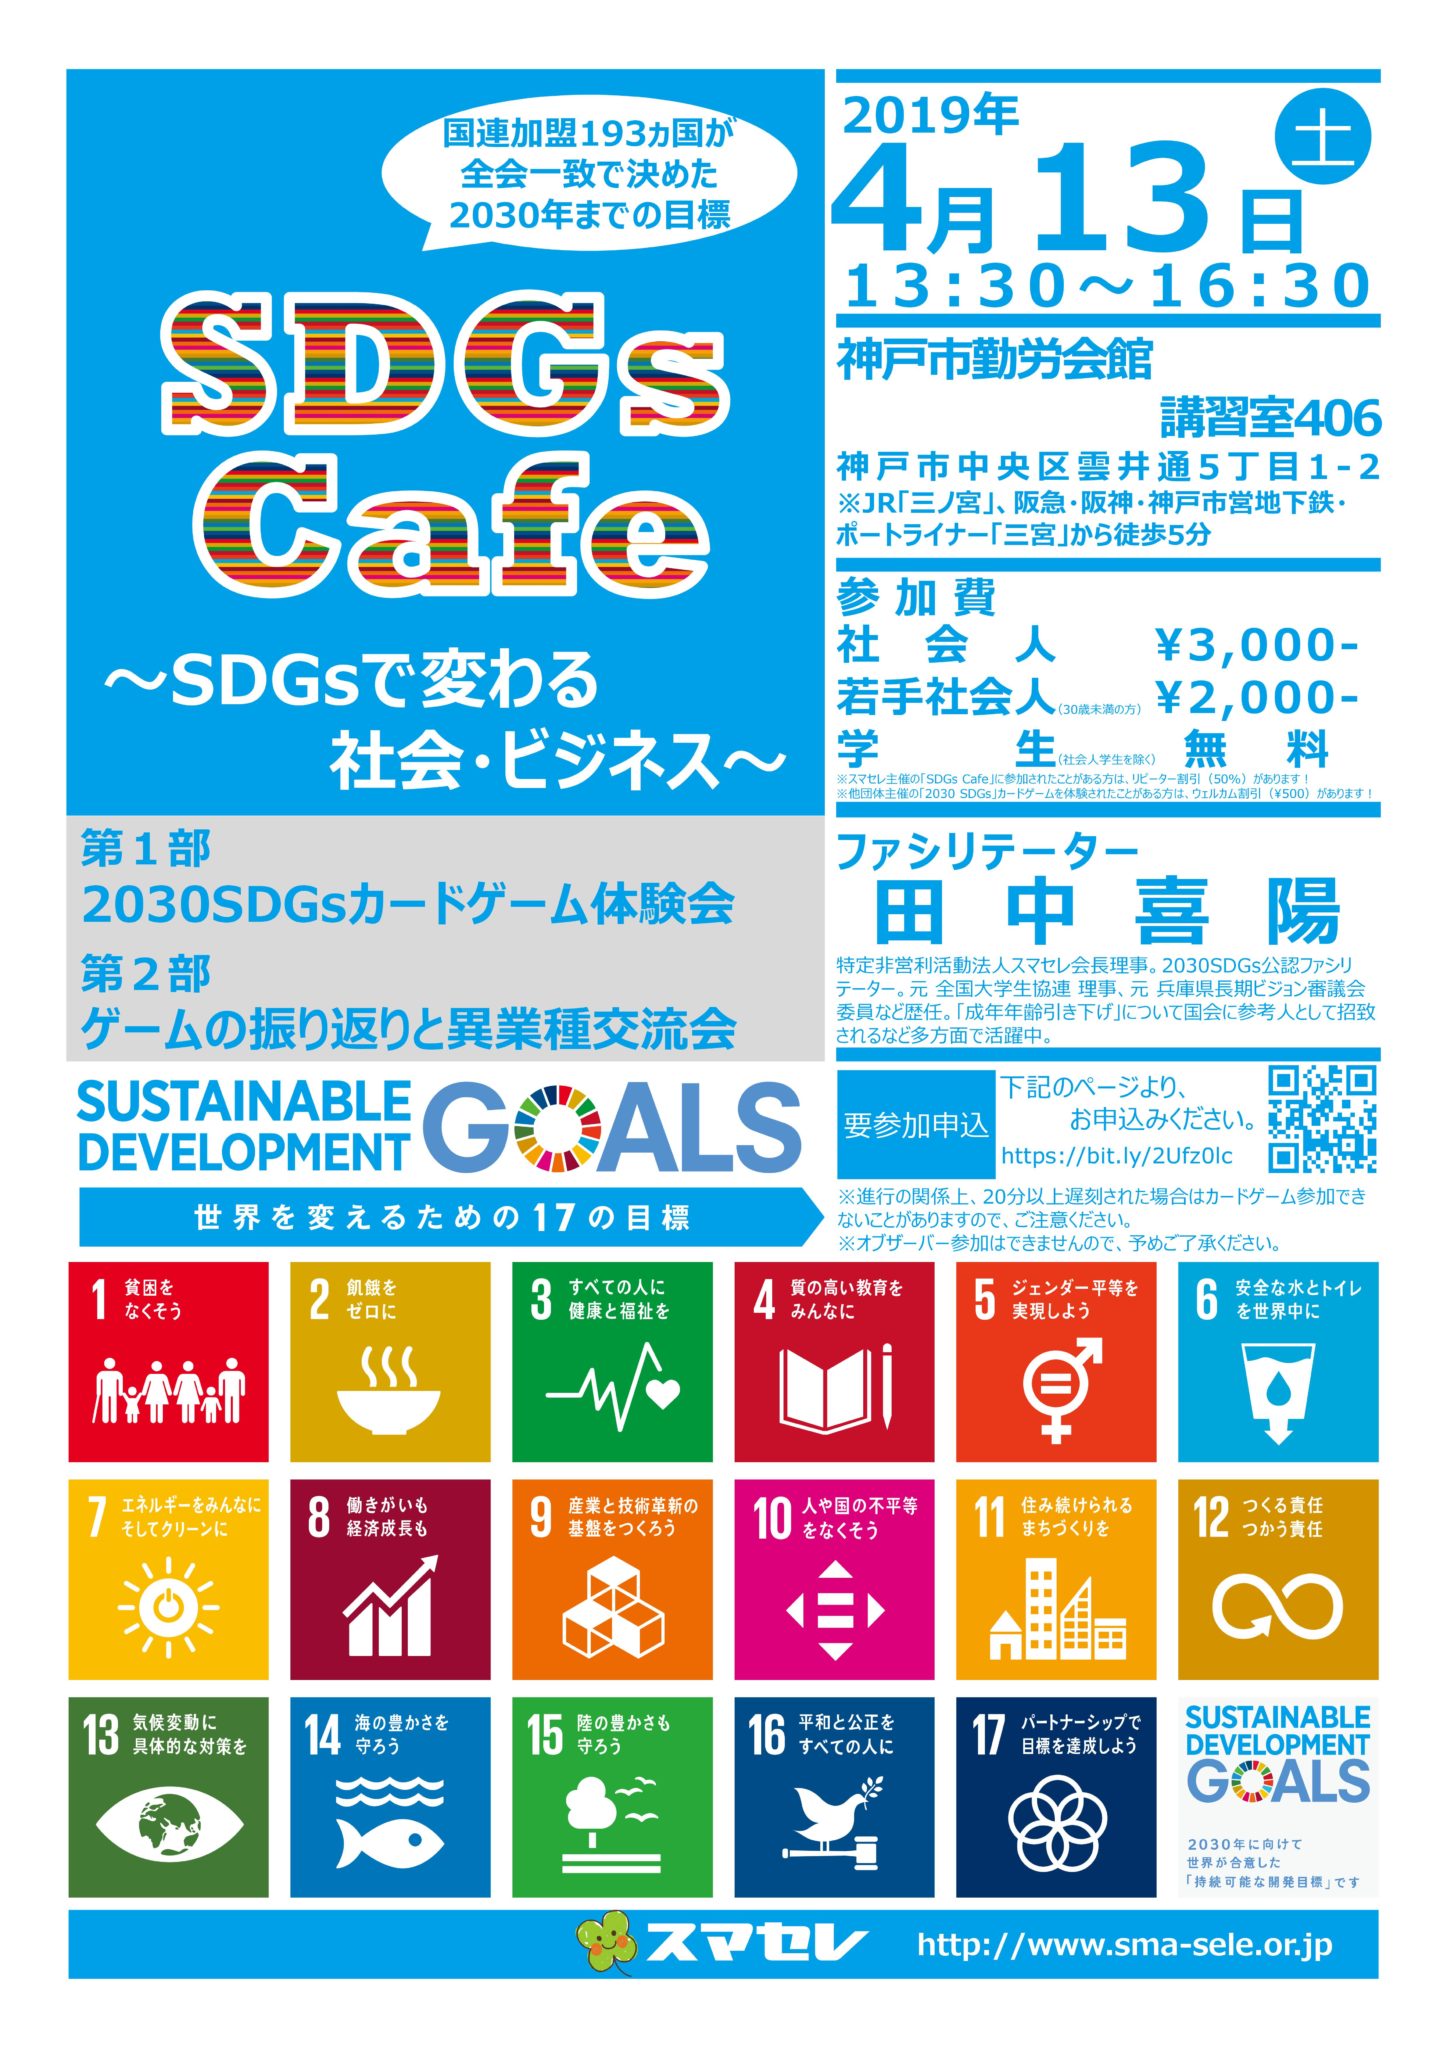 2019/4/13「SDGs Cafe」